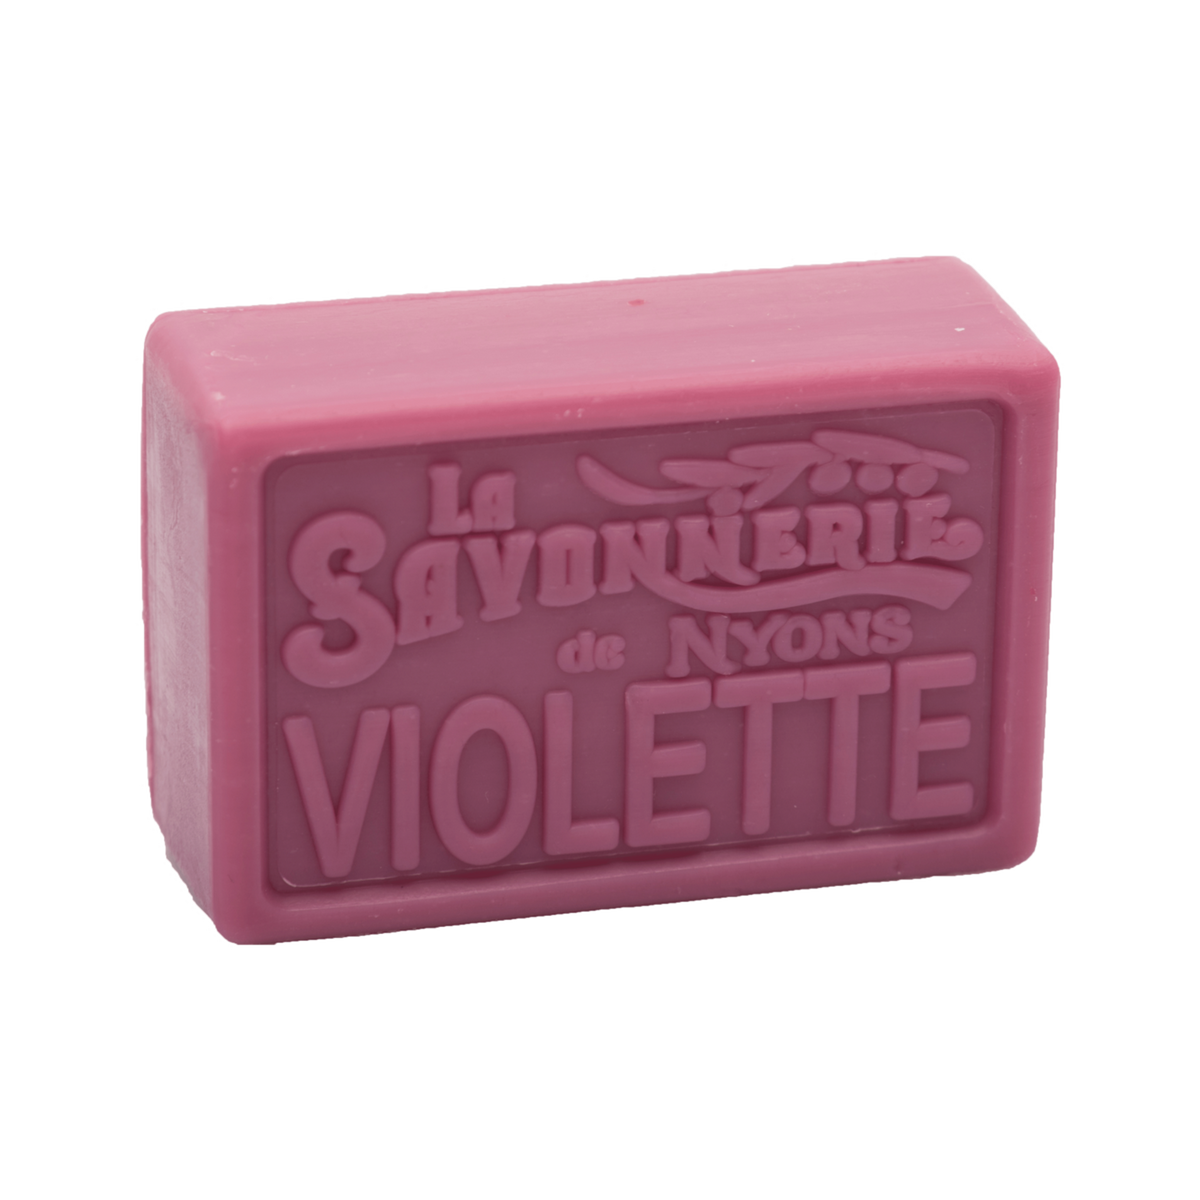 La Savonnerie de Nyons Provence Violet Soap 100g